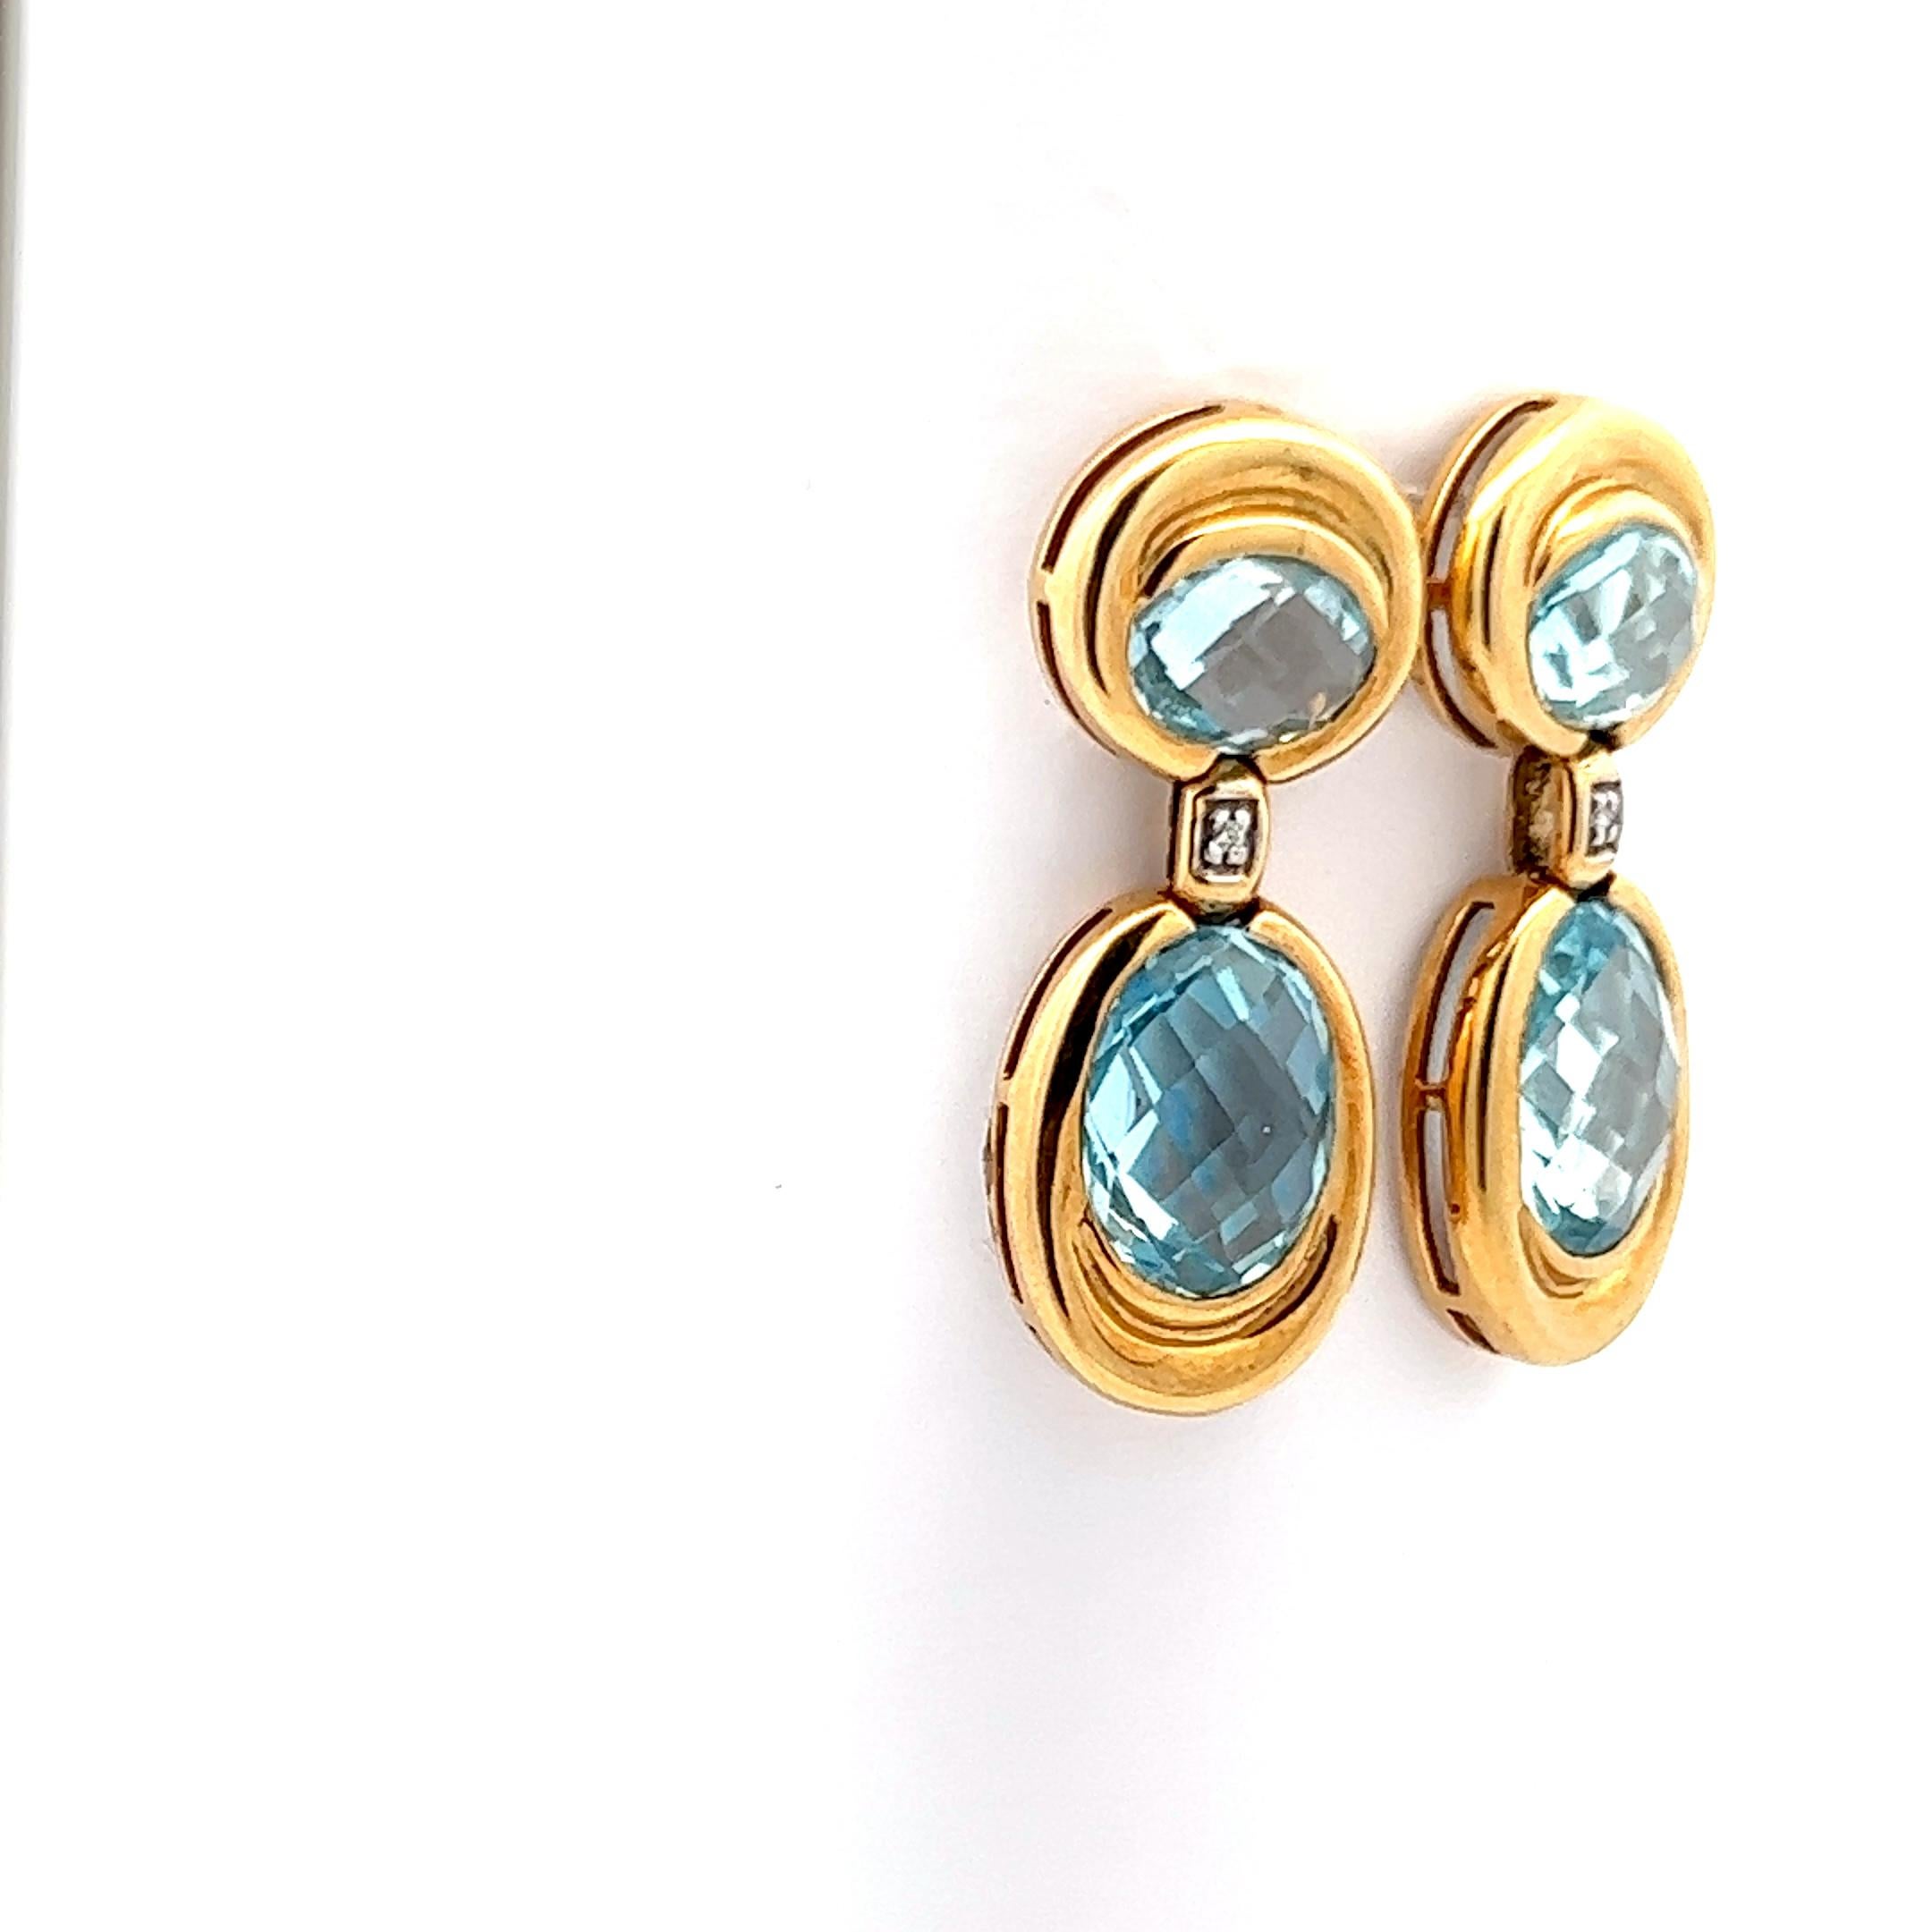 Dies ist ein wunderschönes Paar zeitgenössischer Aquamarin- und Diamant-Ohrringe aus 18 Karat Gelbgold. Die Ohrringe bestehen aus vier = 10 cttw Aquamarinen mit einem wunderschönen blauen Farbton, der an klares blaues Meereswasser erinnert. Die